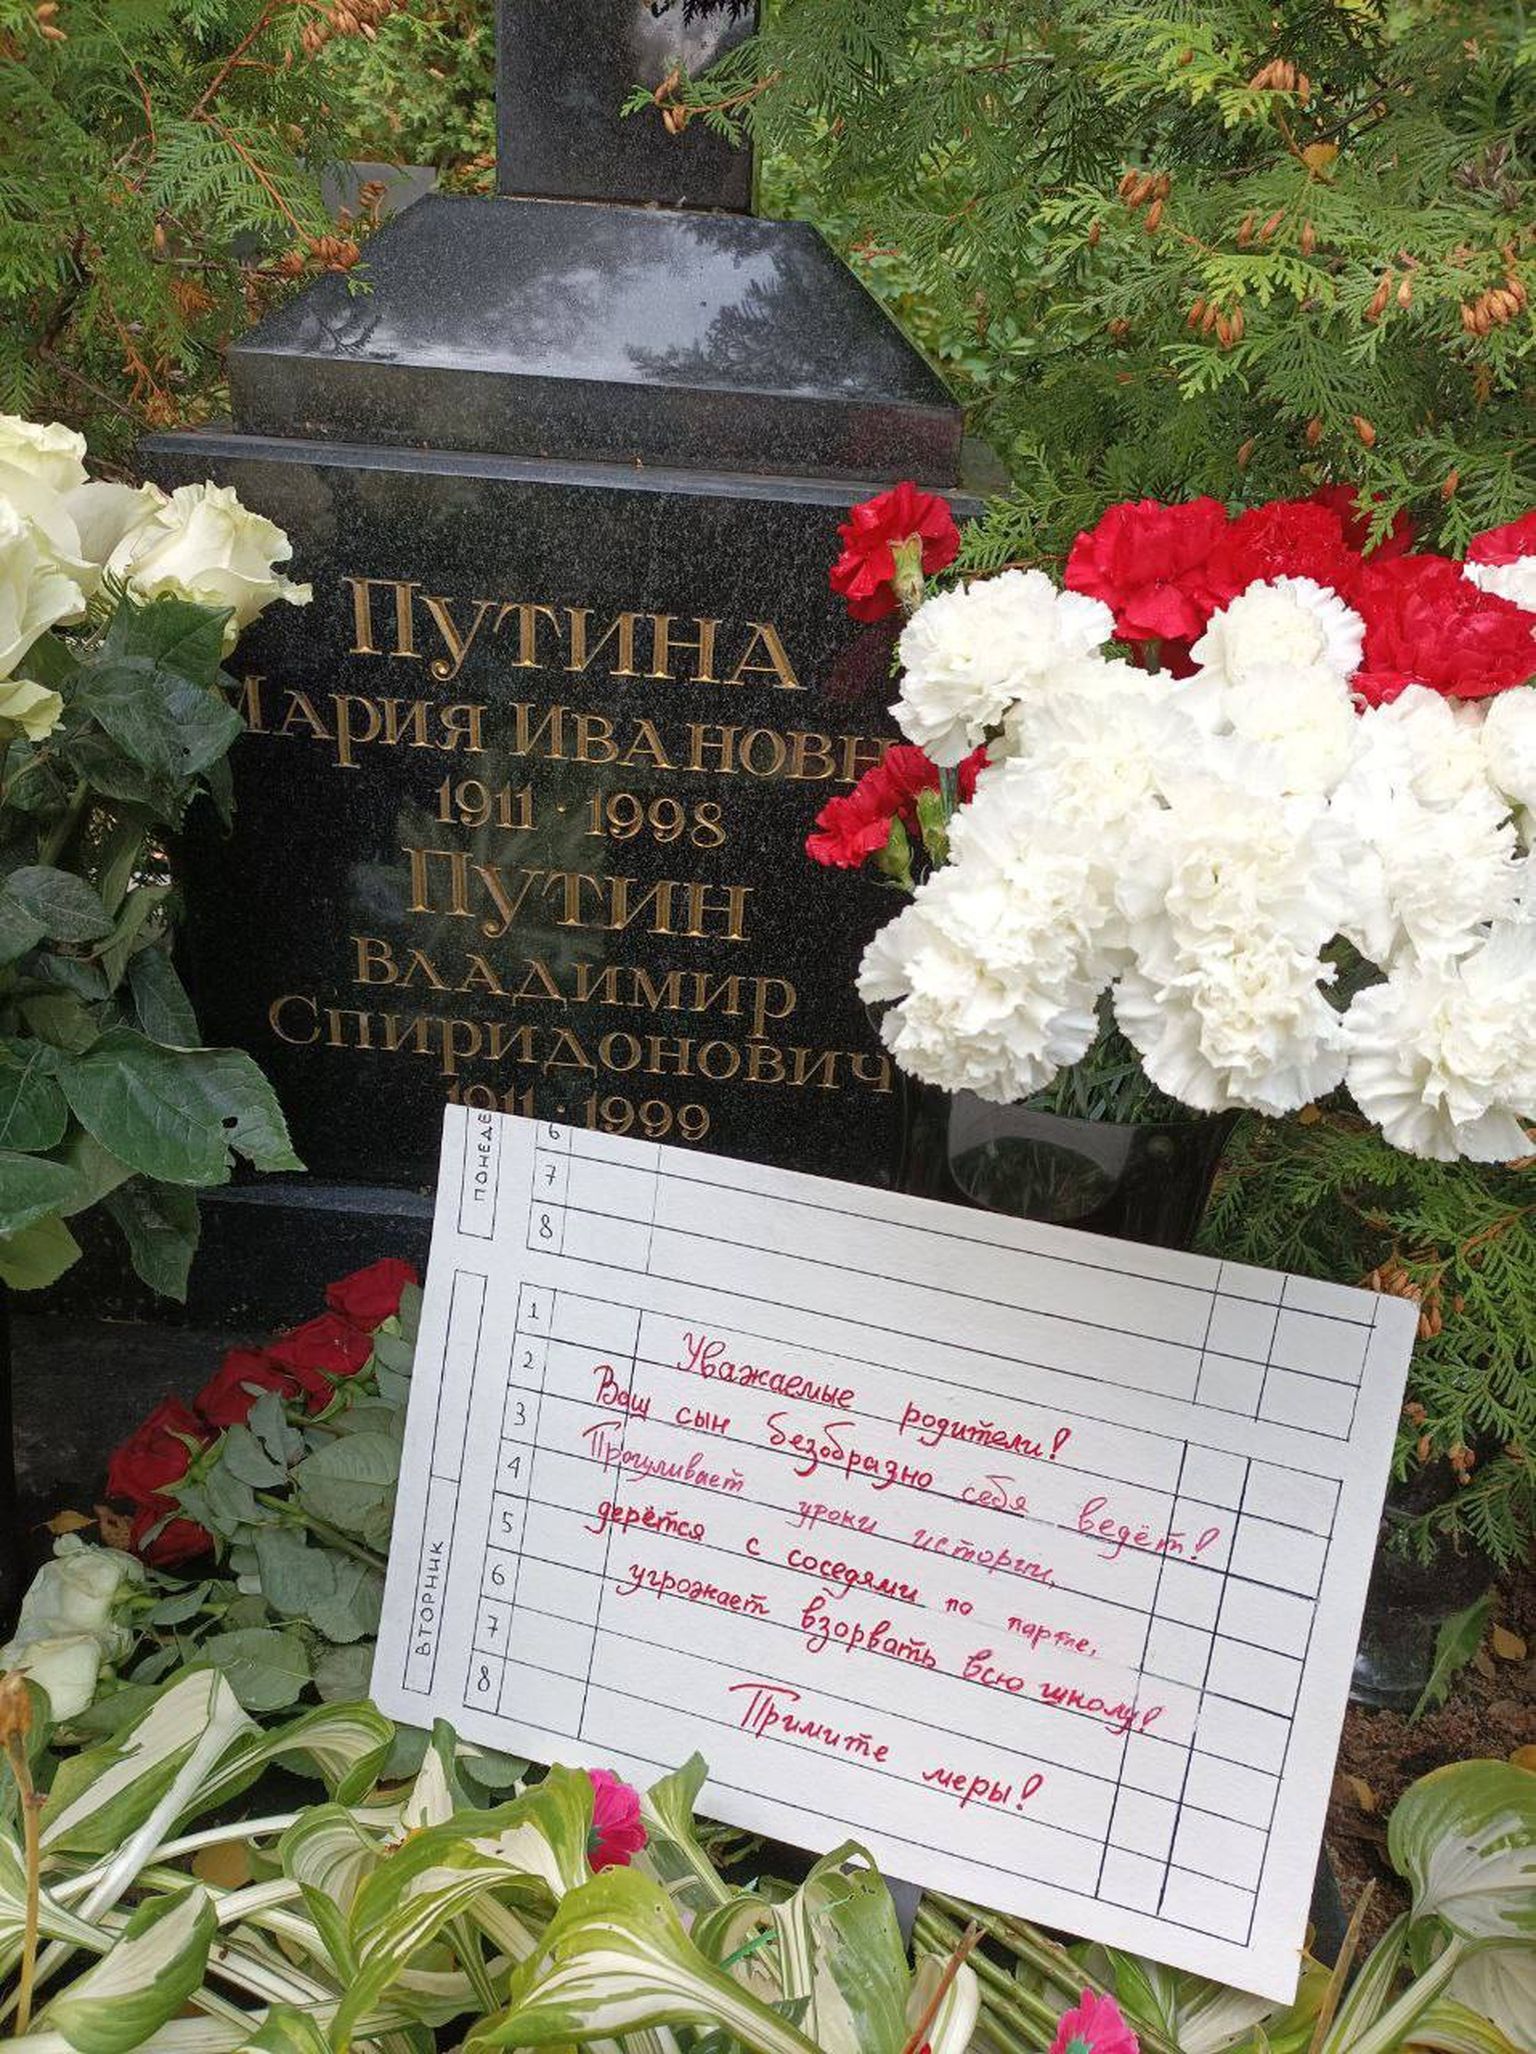 Записка на могиле родителей Путина.